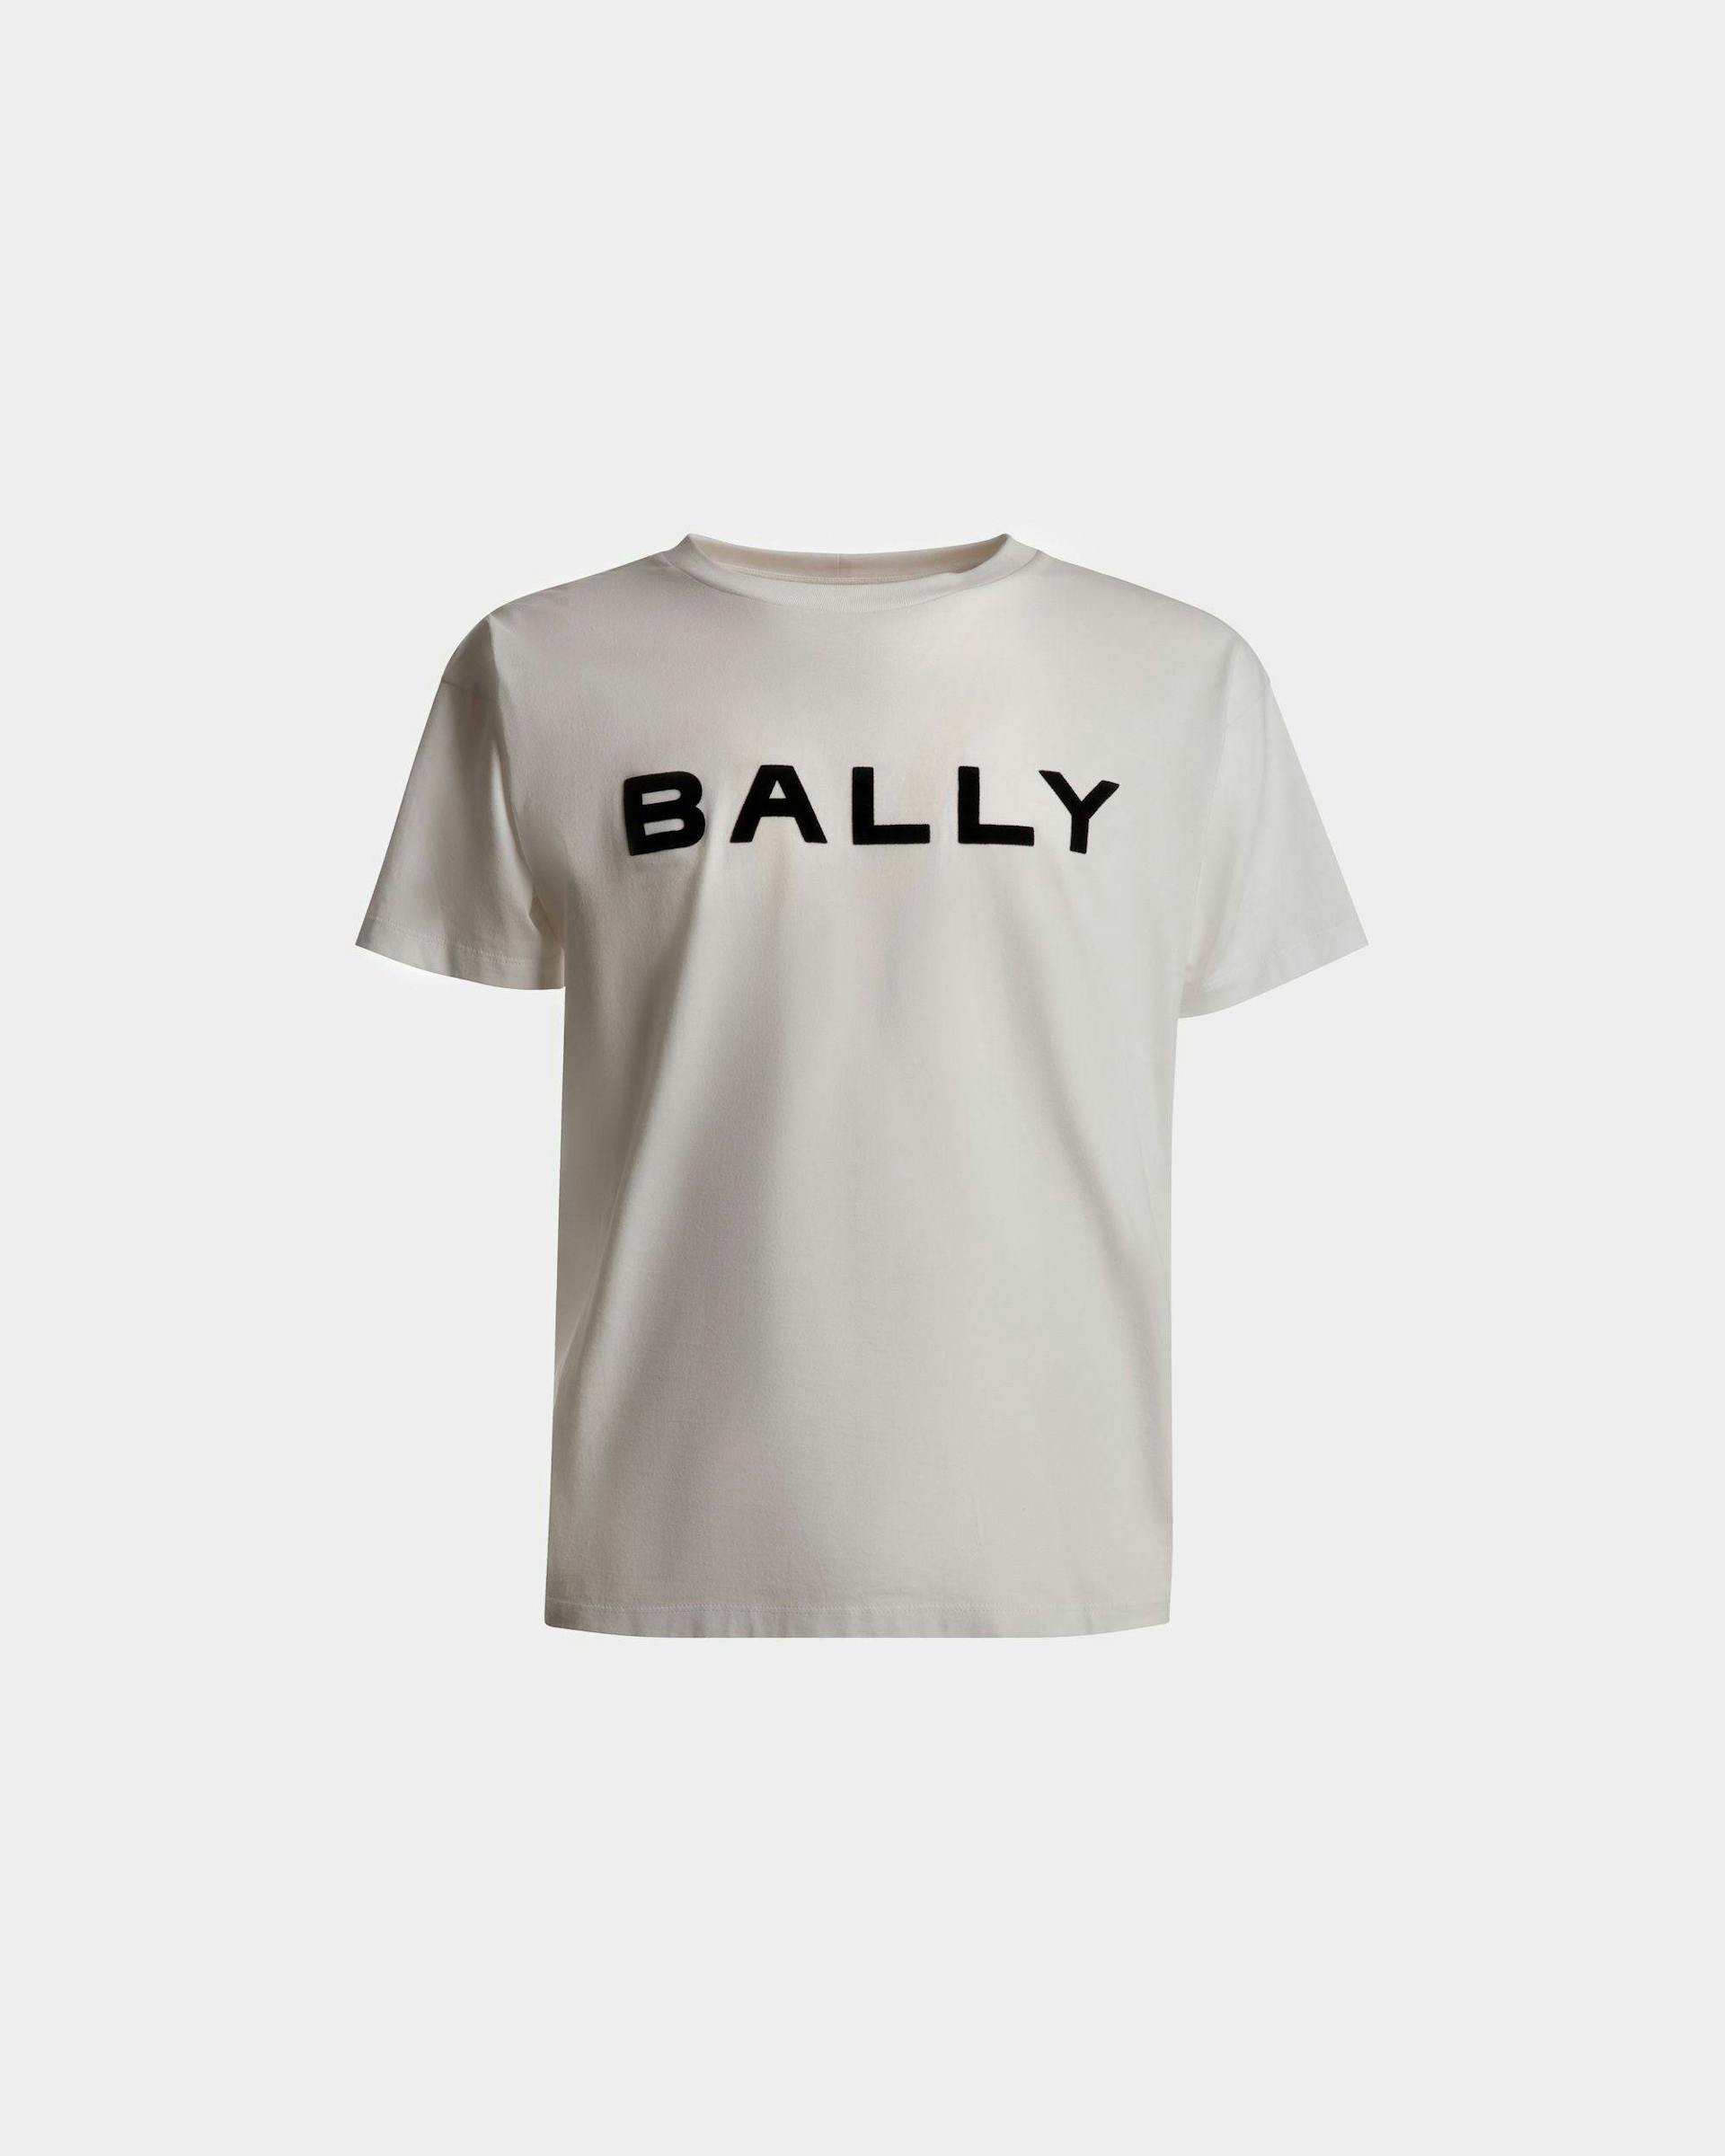 ロゴ Tシャツ ホワイト コットン - 男性 - Bally - 01